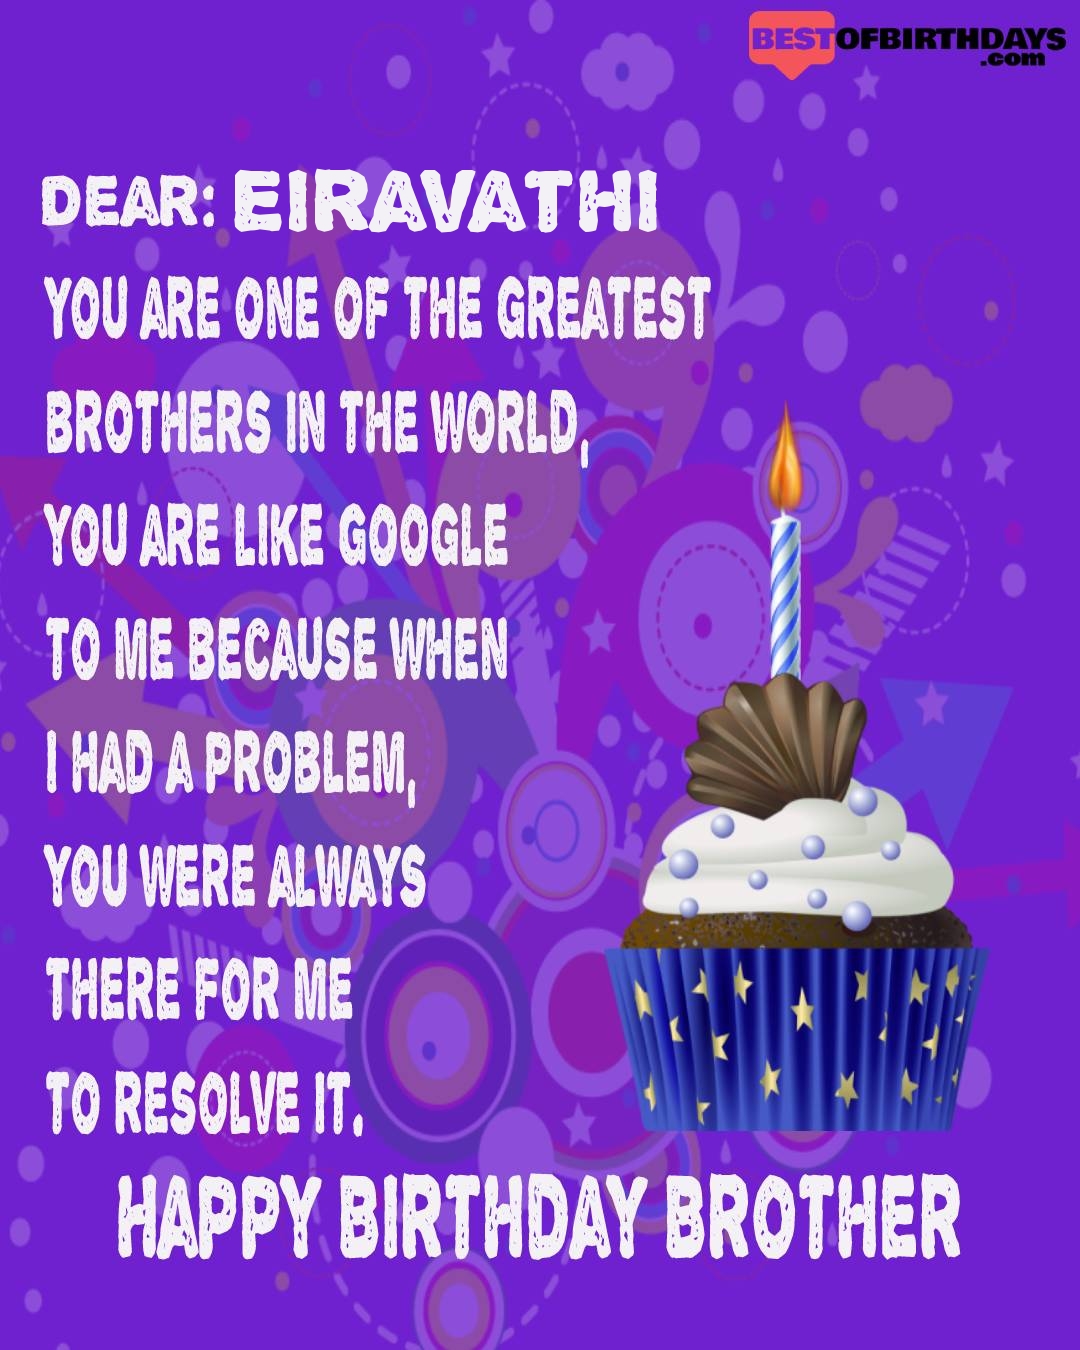 Happy birthday eiravathi bhai brother bro